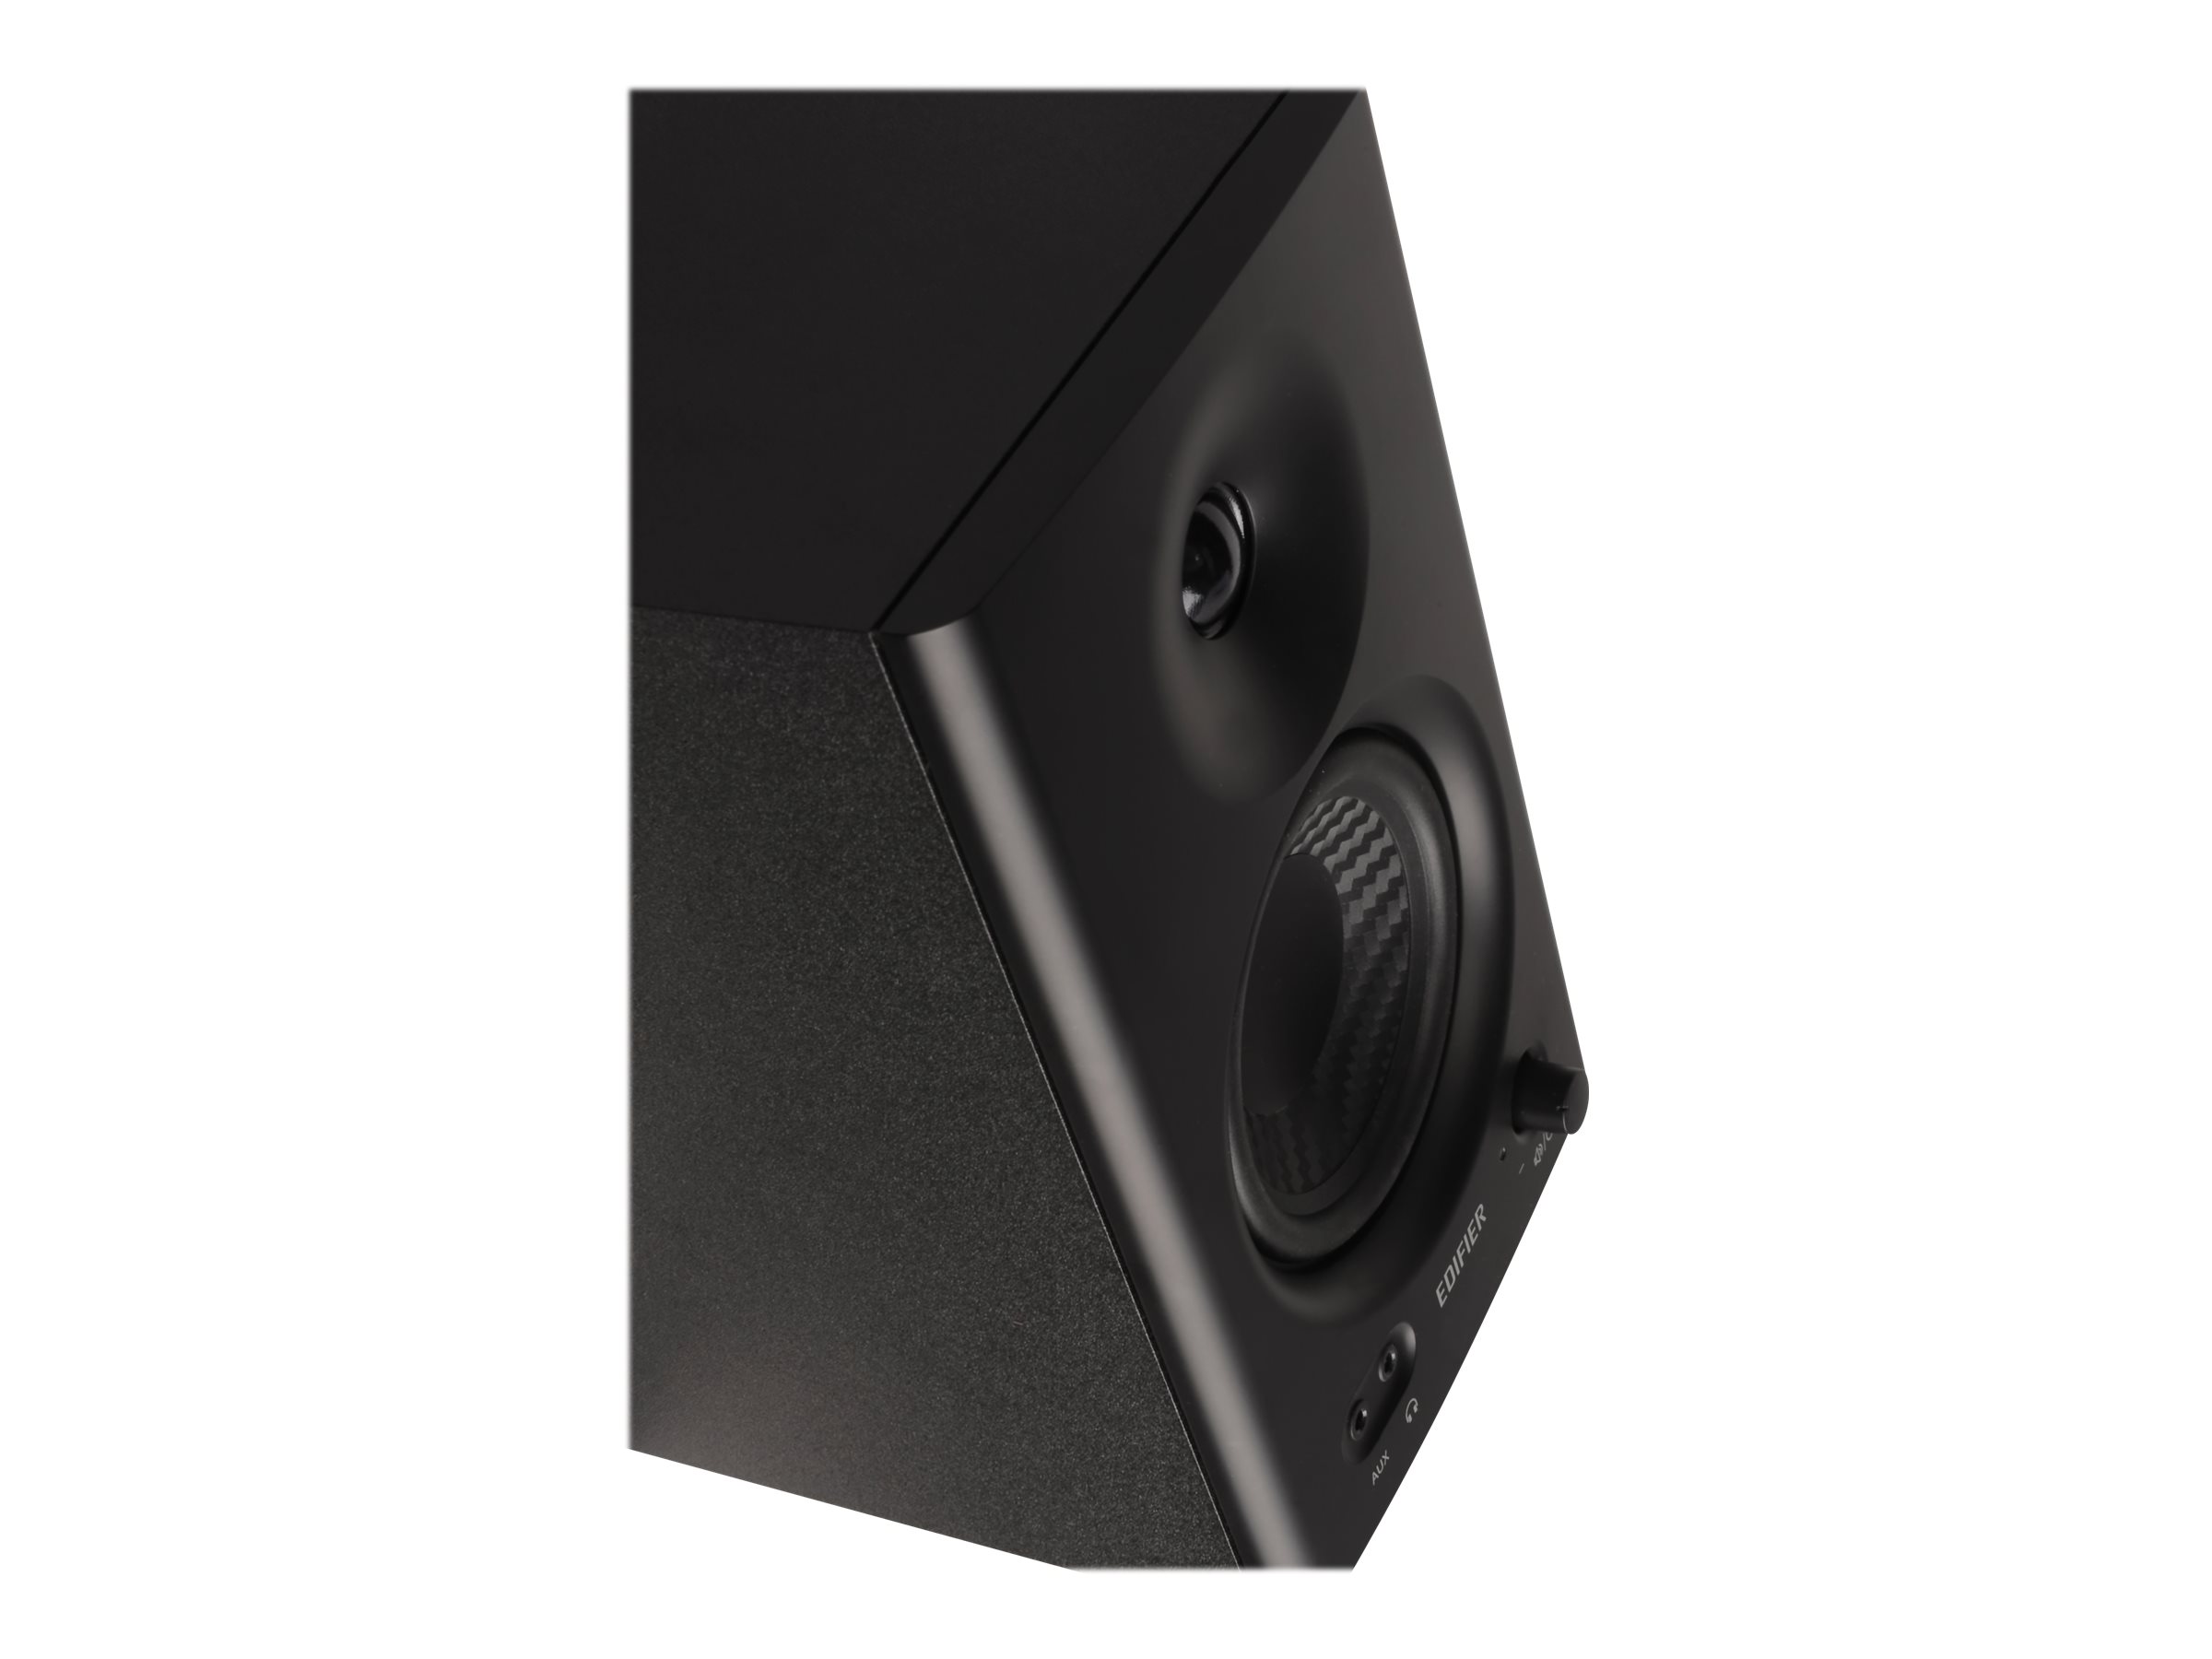 Edifier MR4 2.0 Monitor Reference Speaker System Black MR4b - Best Buy